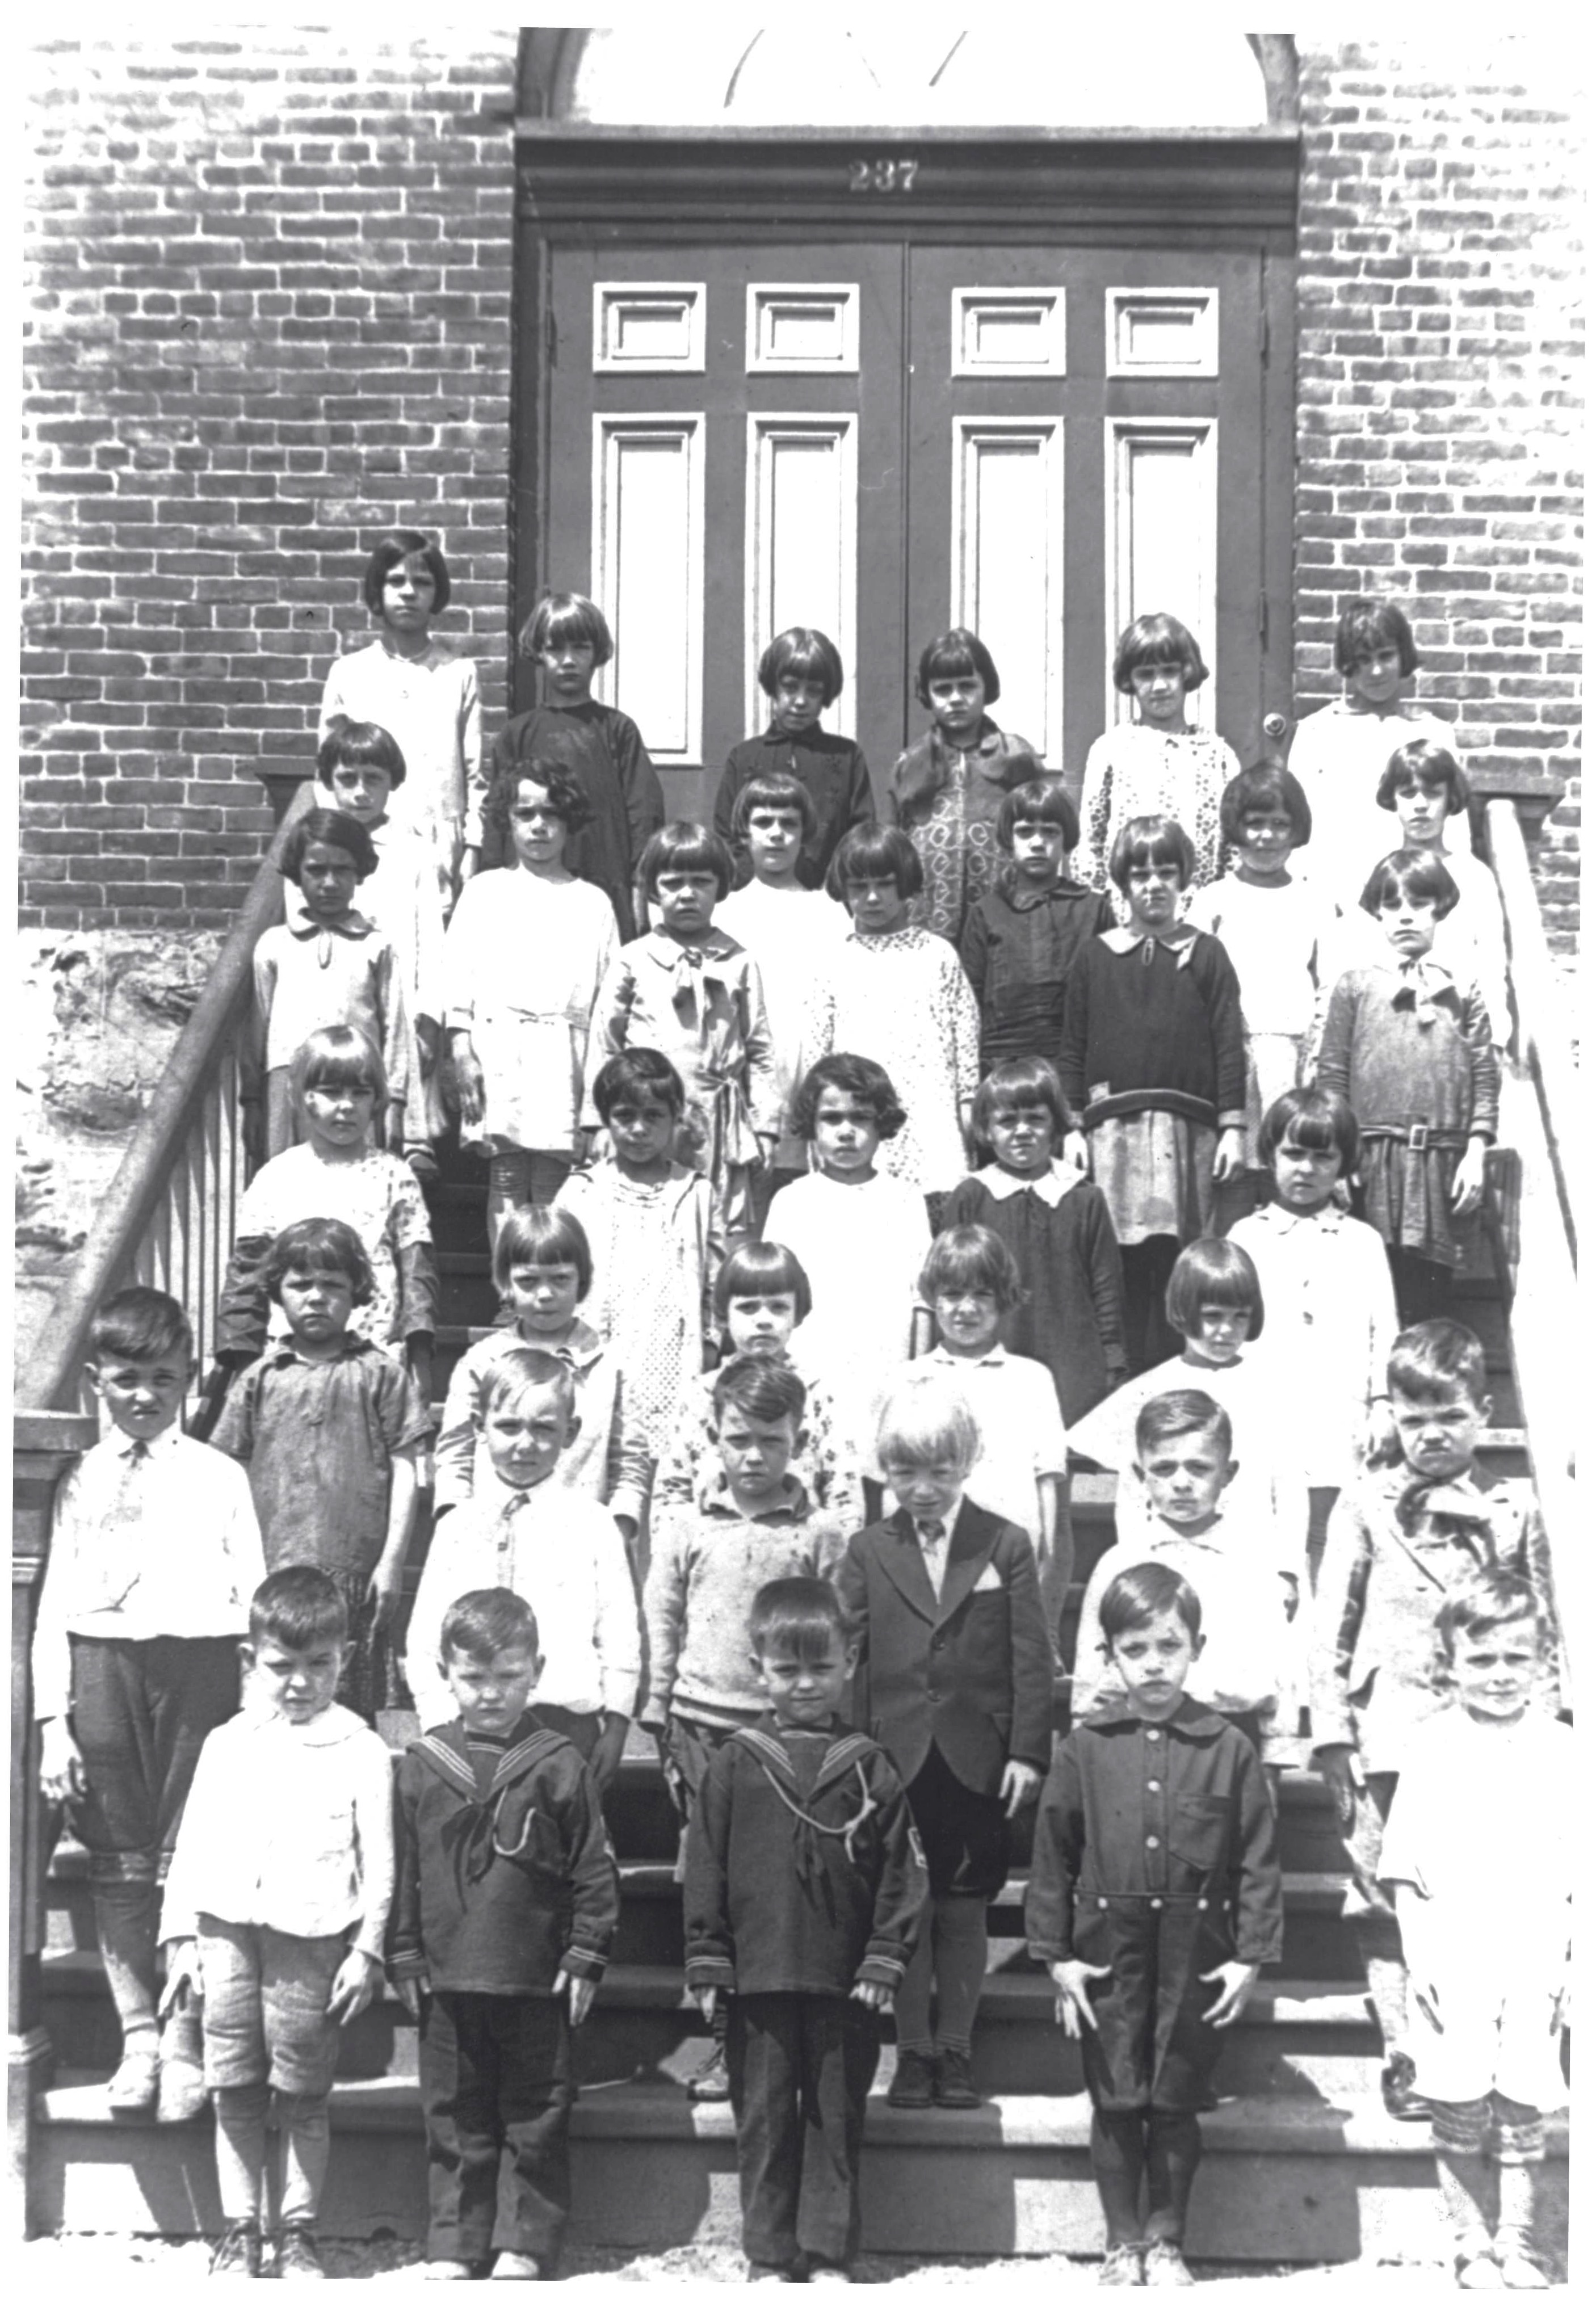 38 schoolchildren posing